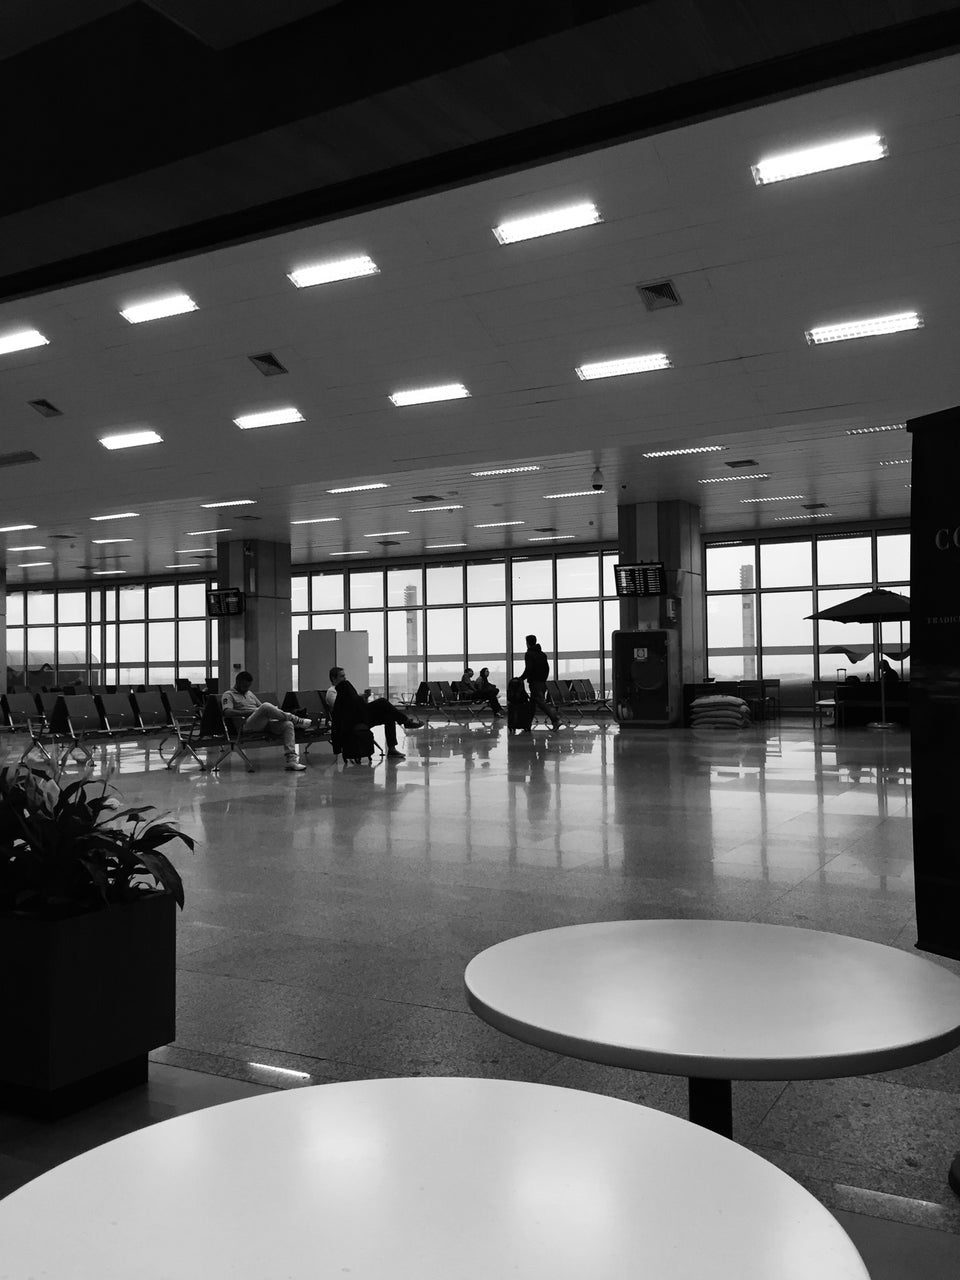 Photo of Aeroporto Internacional do Rio de Janeiro / Galeão (GIG)